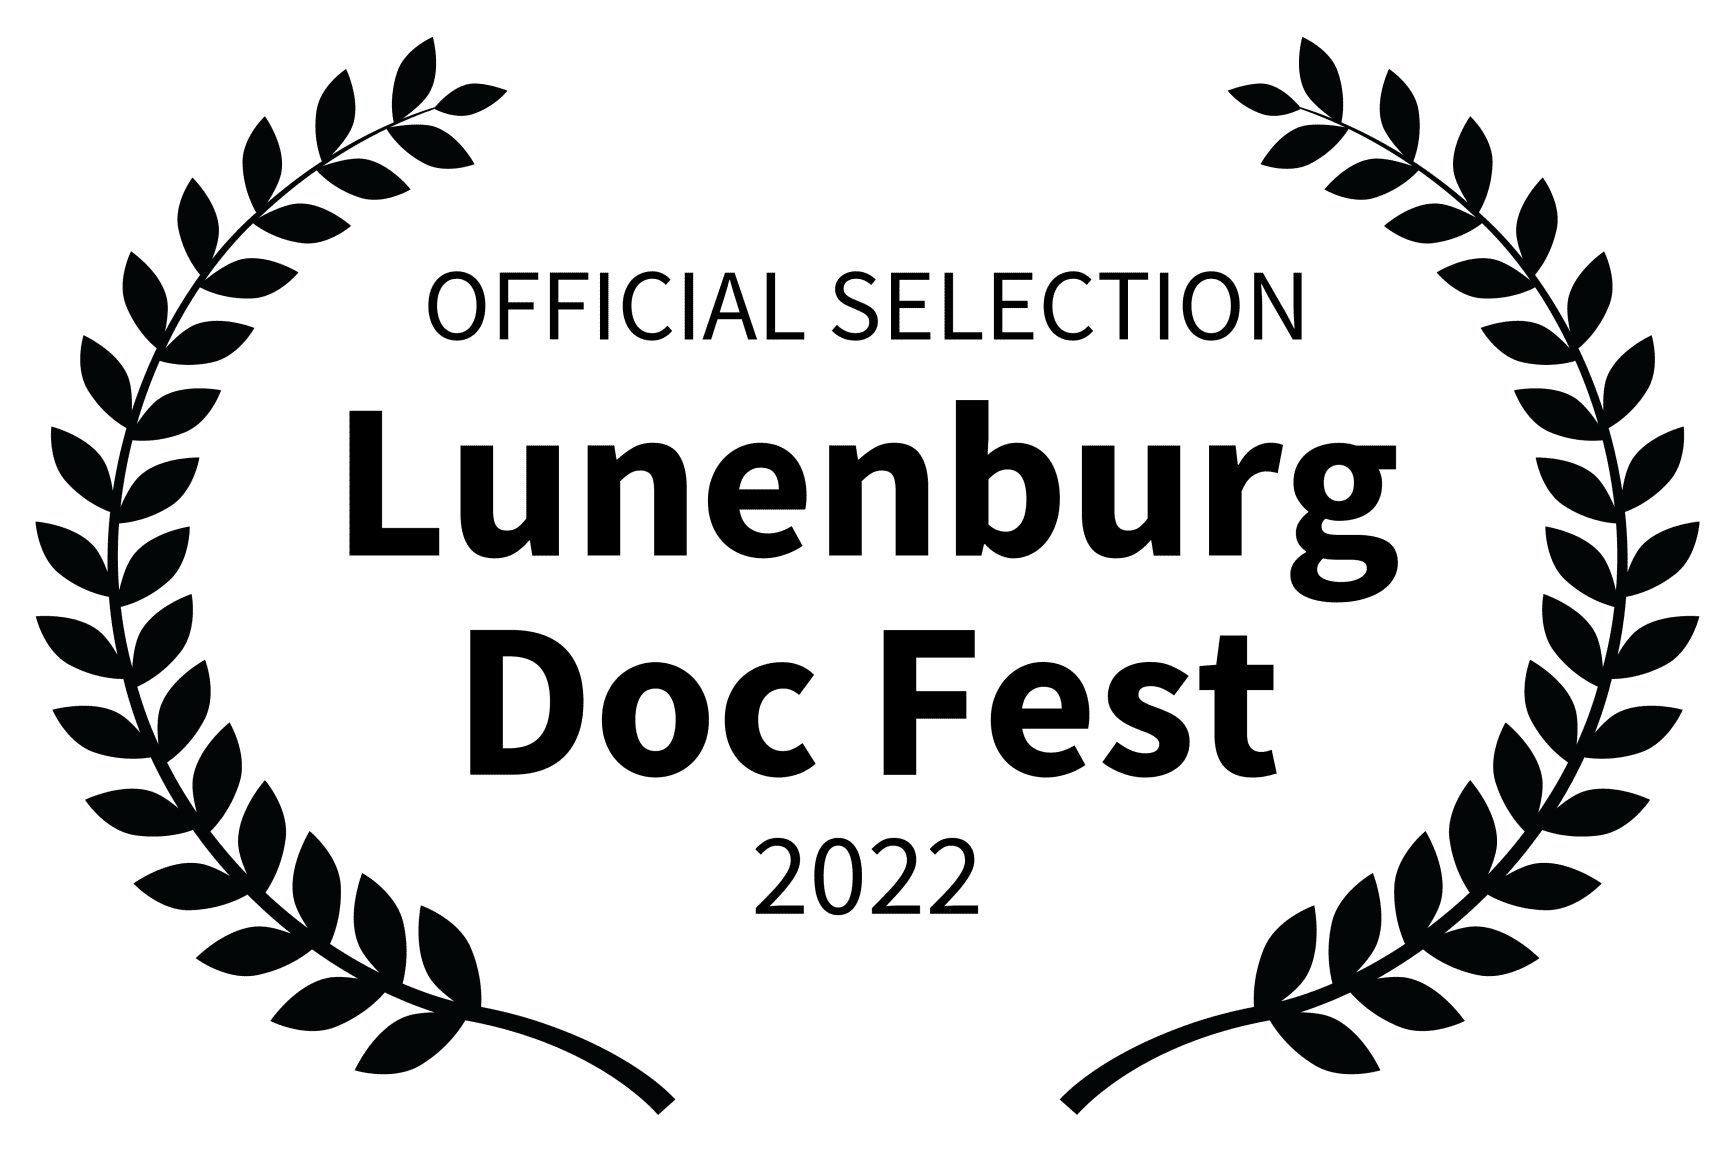 OFFICIAL SELECTION - Lunenburg Doc Fest - 2022